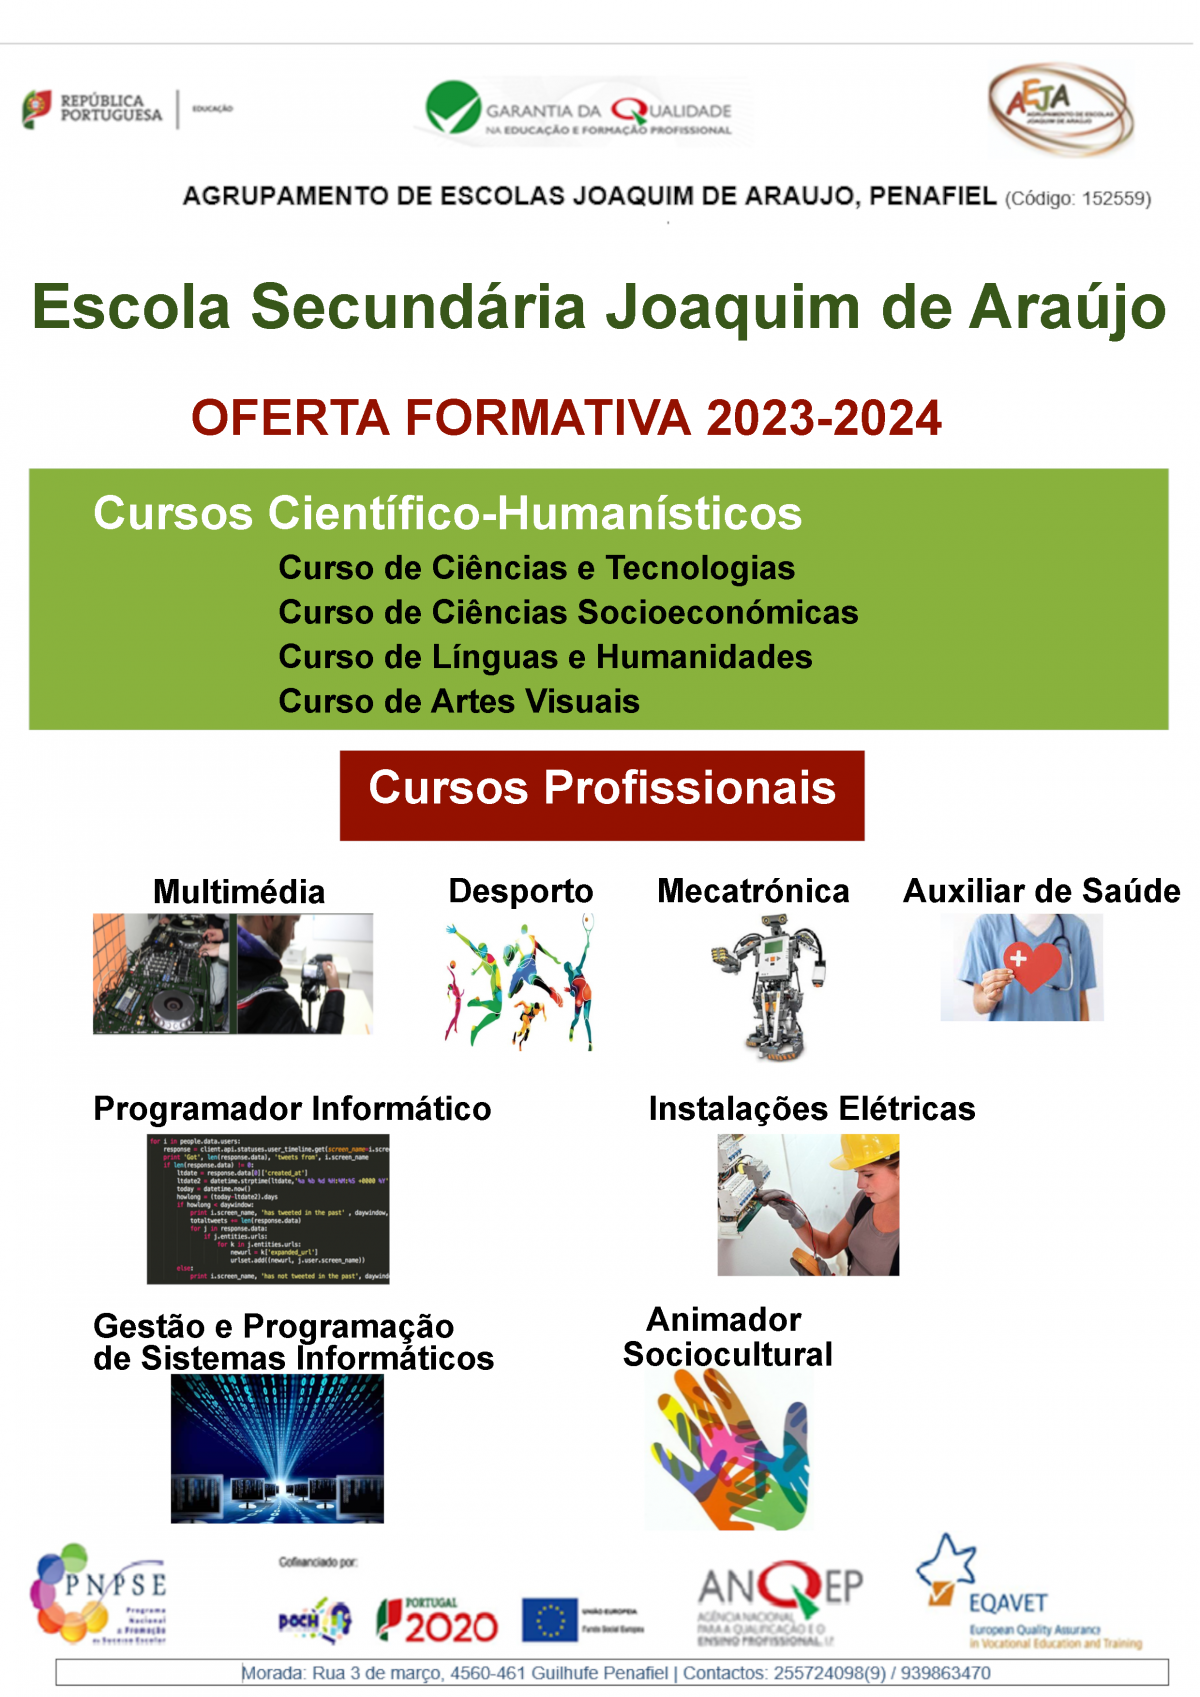 Oferta Formativa - Escola Secundária Joaquim de Araújo 2023-2024